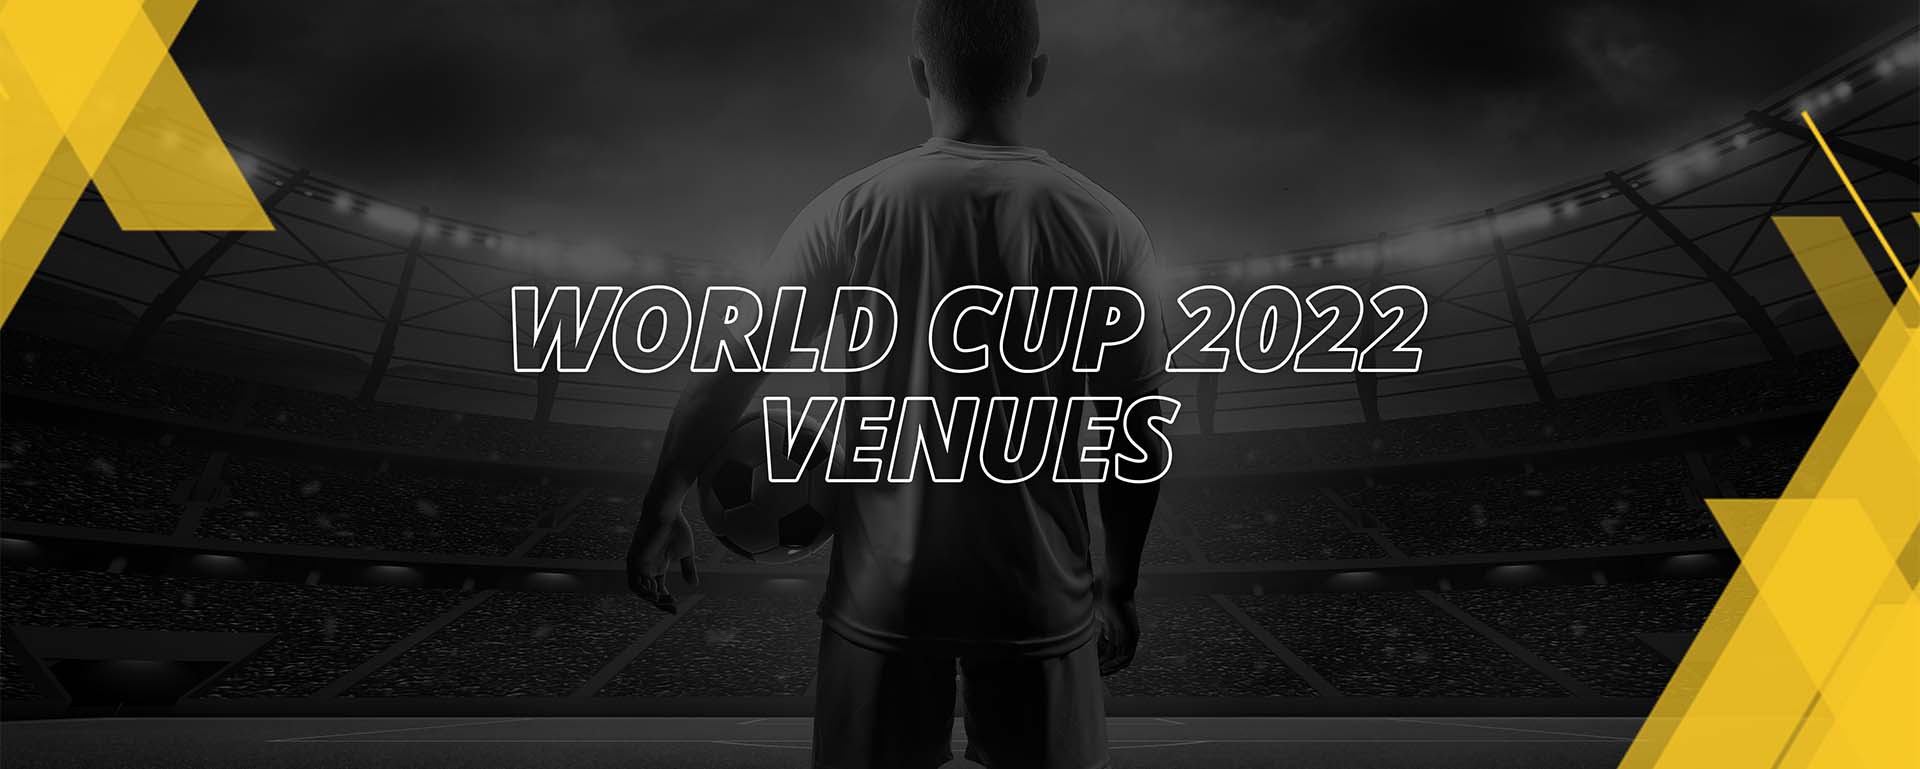 FIFA WORLD CUP 2022: VENUES